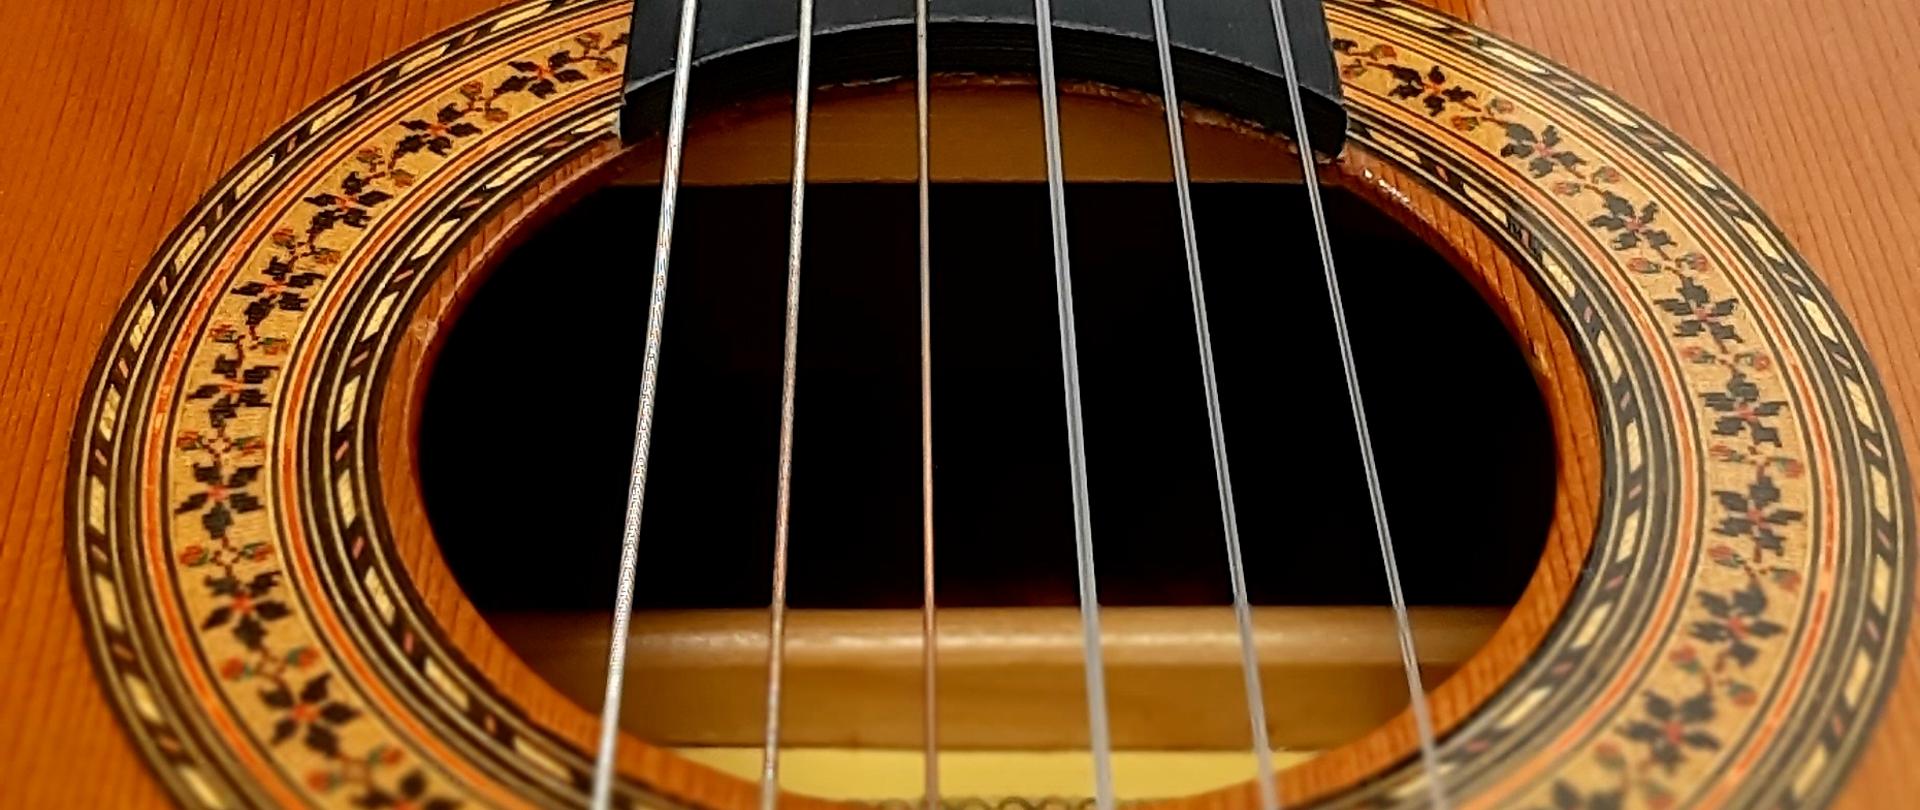 Zdjęcie przedstawia struny gitary i fragment pudła wraz z gryfem